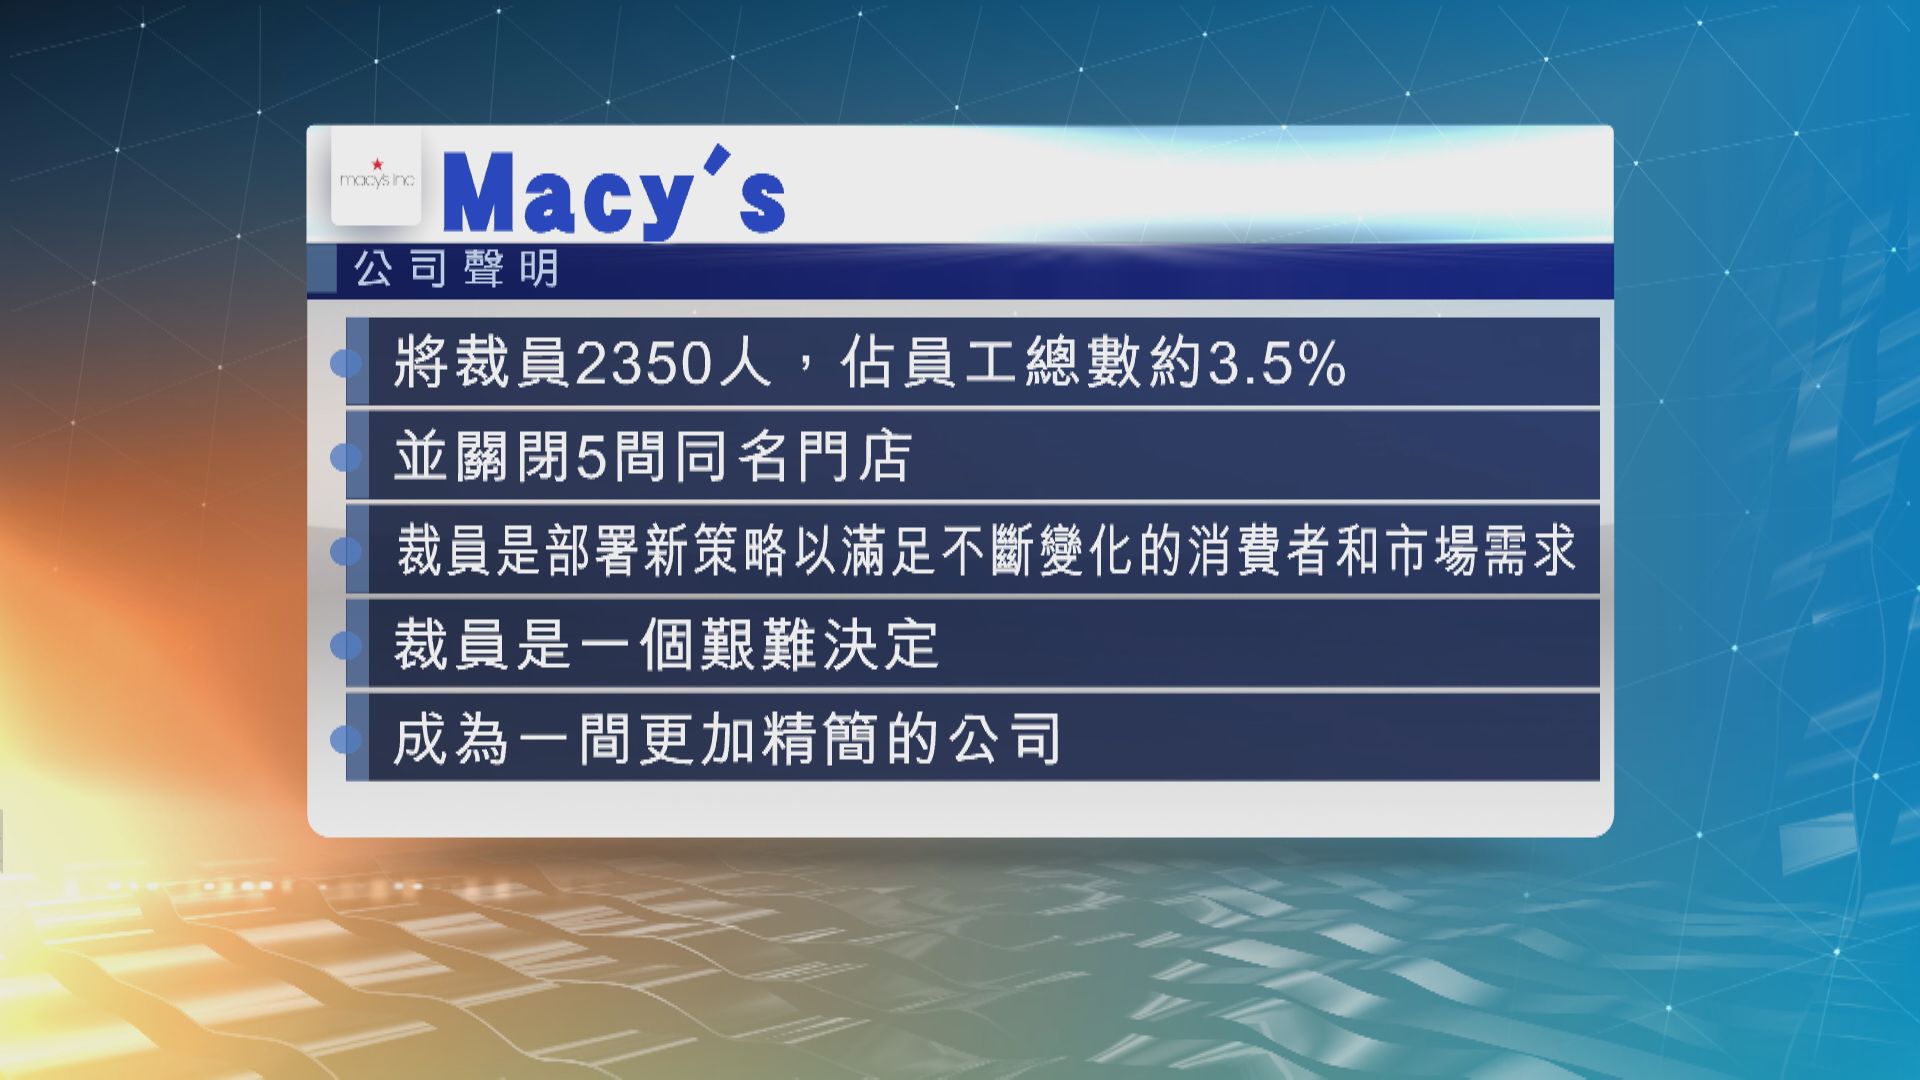 【美企裁員潮】Macy’s將炒2350人 關閉5家門市